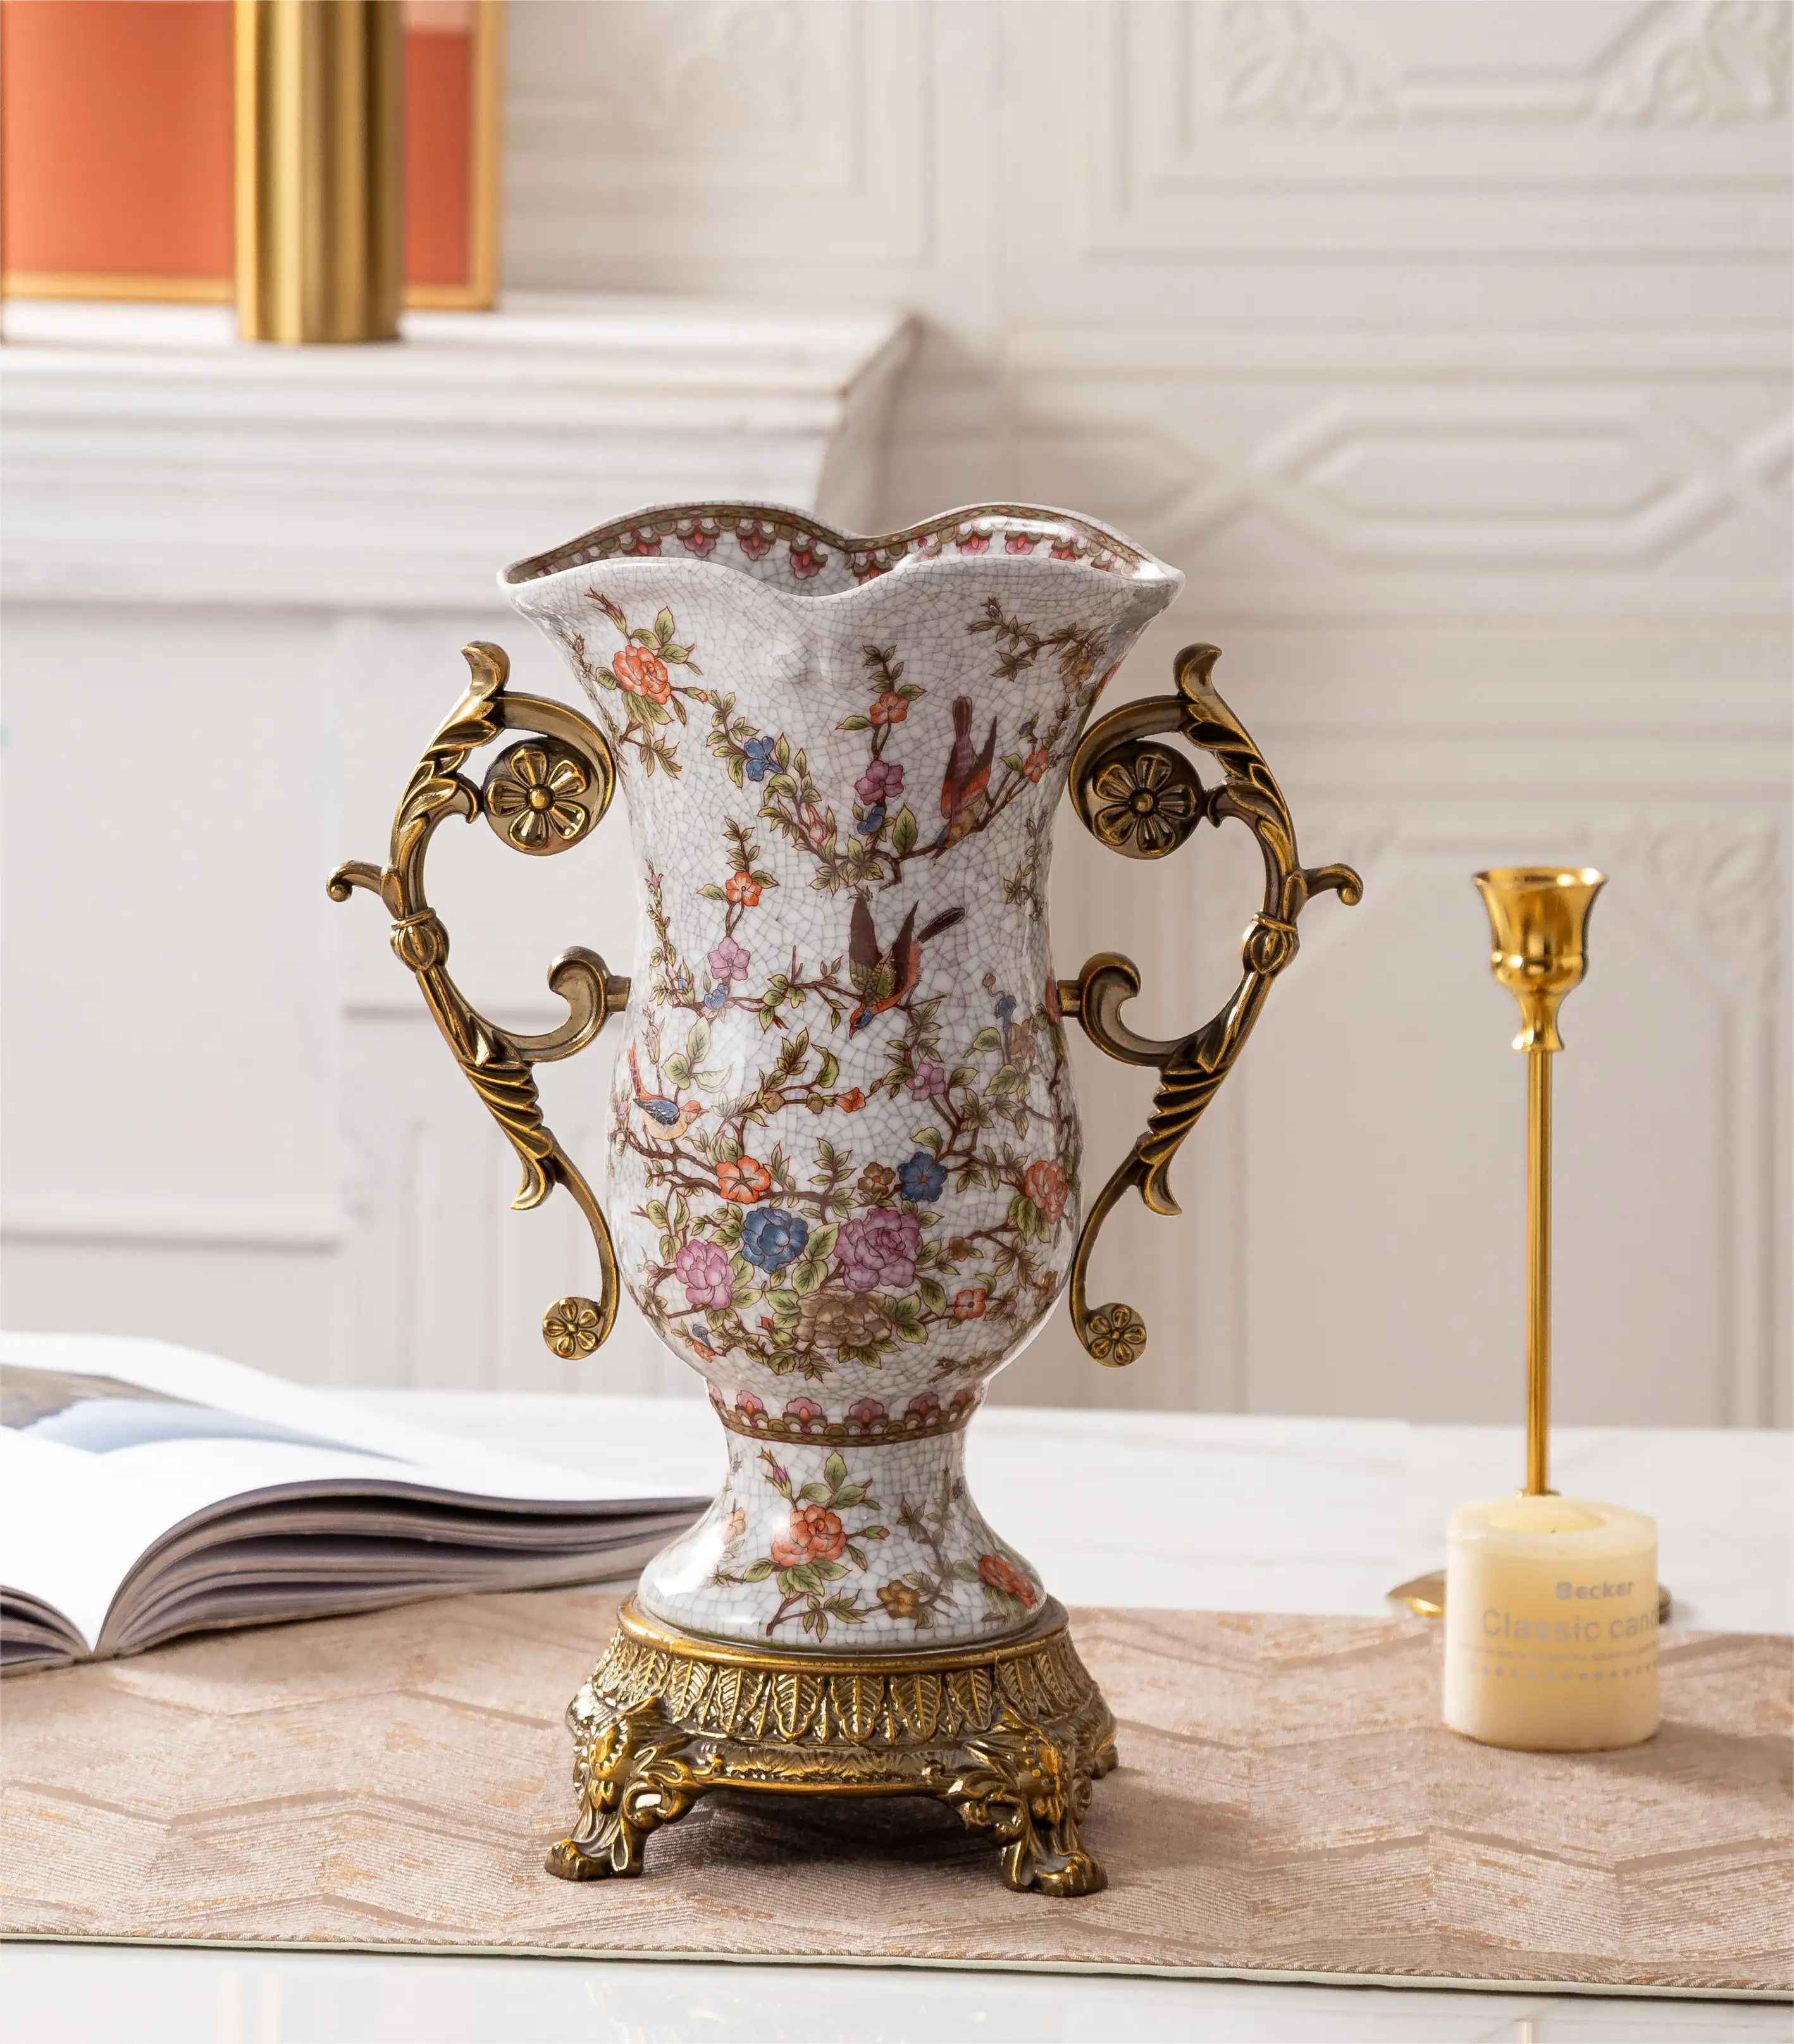 Werkspreise neue kreative Designs retro klassisch antik Messing Vogelblume Kasachstan Keramikvase für Heimdekoration